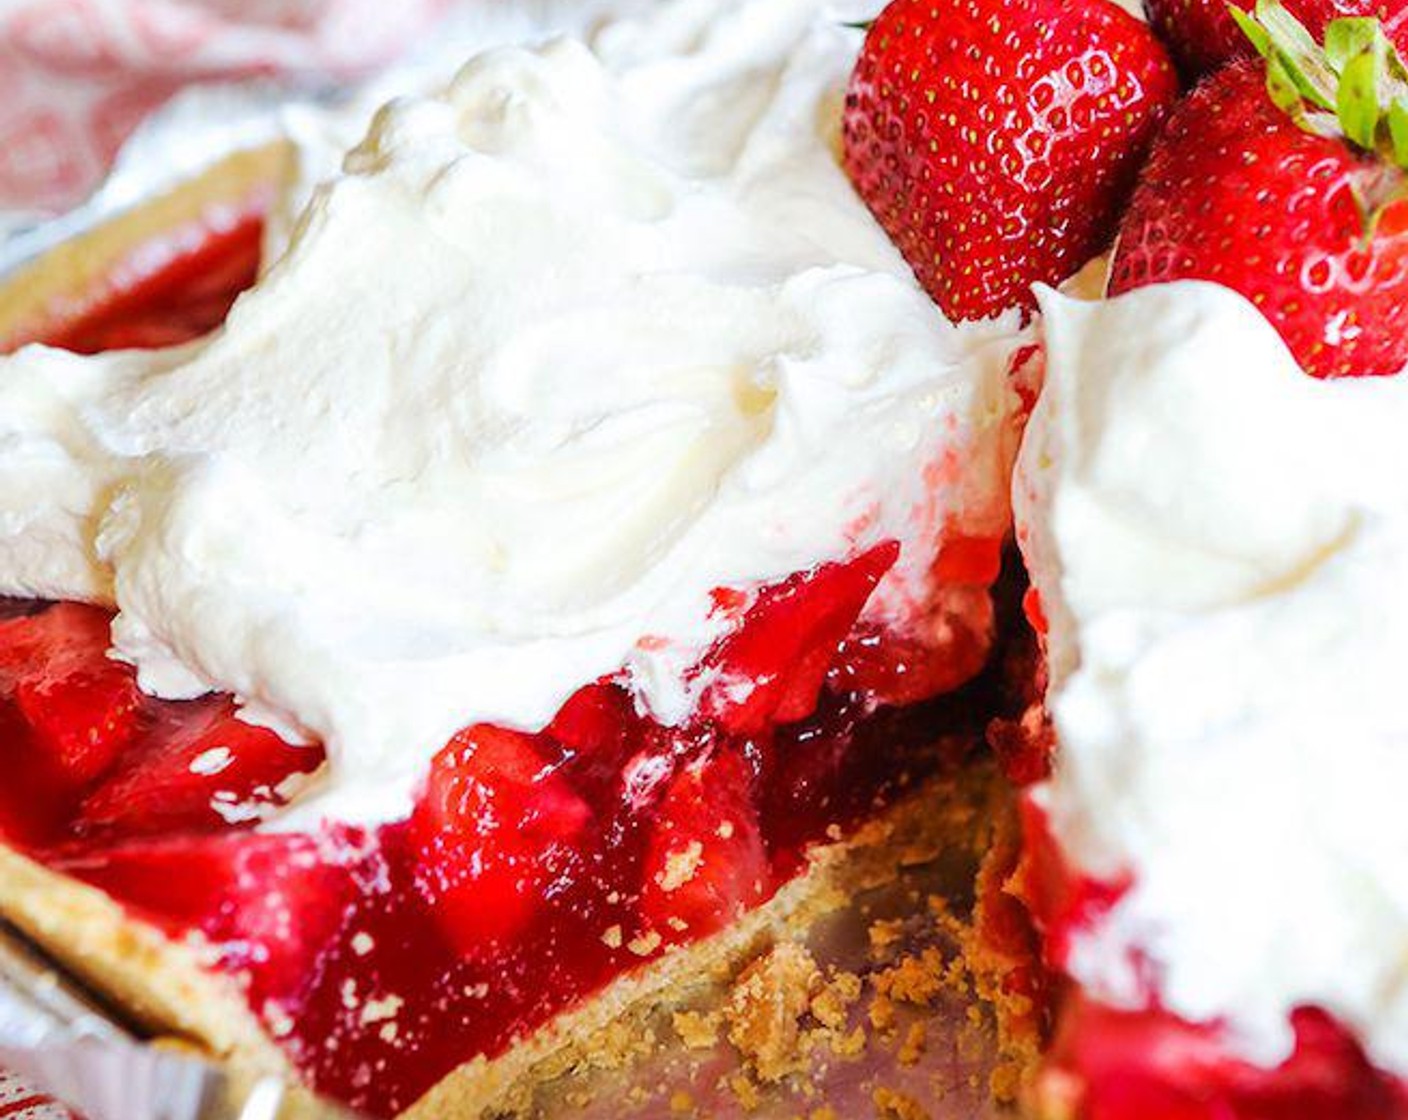 No-Bake Fresh Strawberry Pie